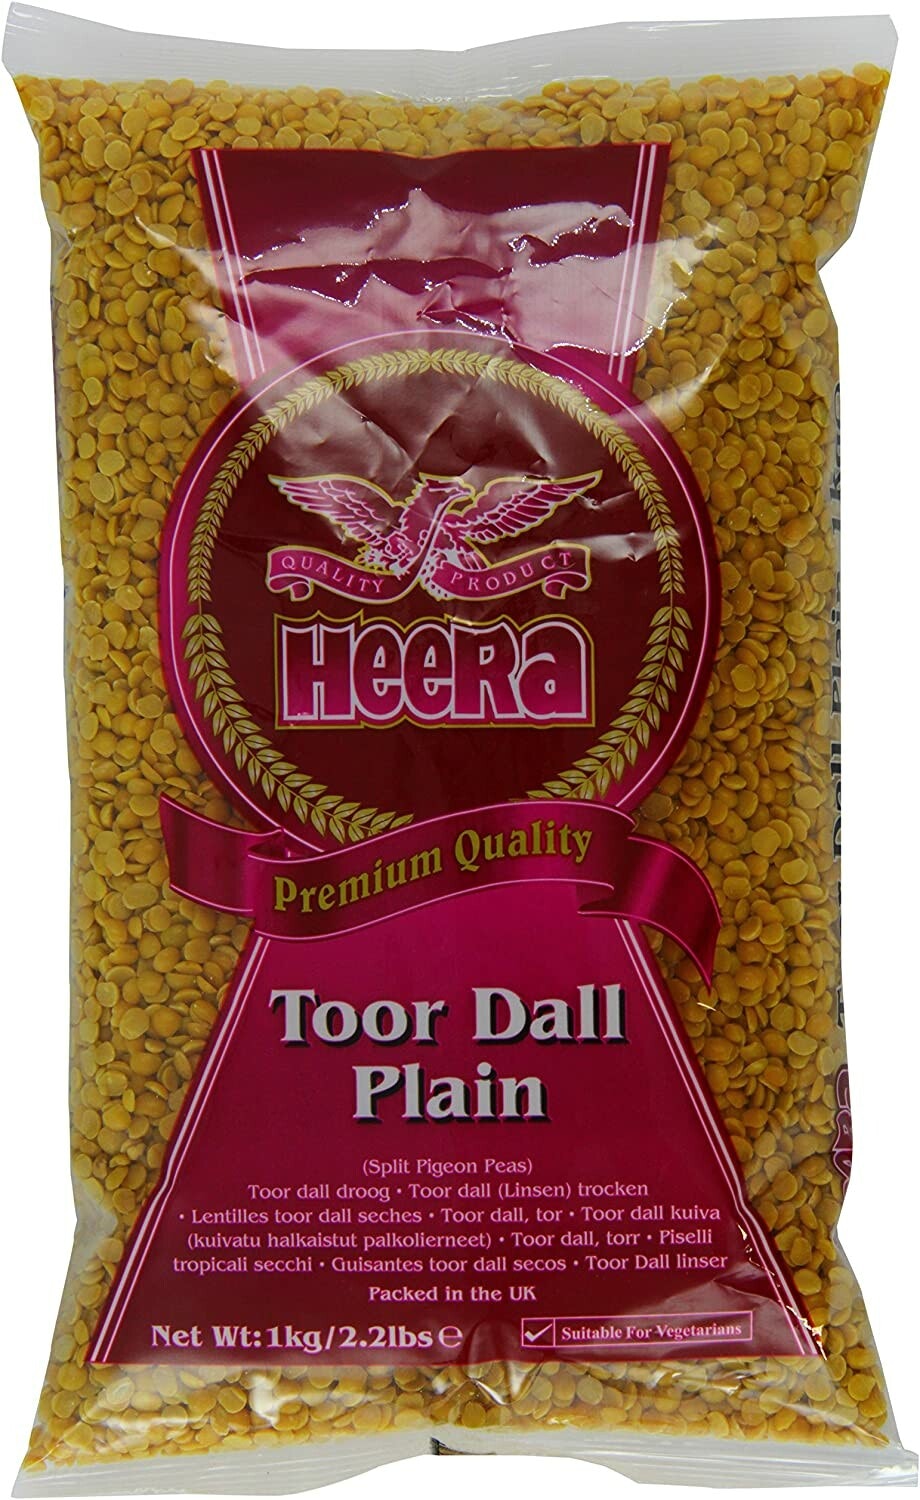 Toor Dal (Heera) - 1kg, 2kg